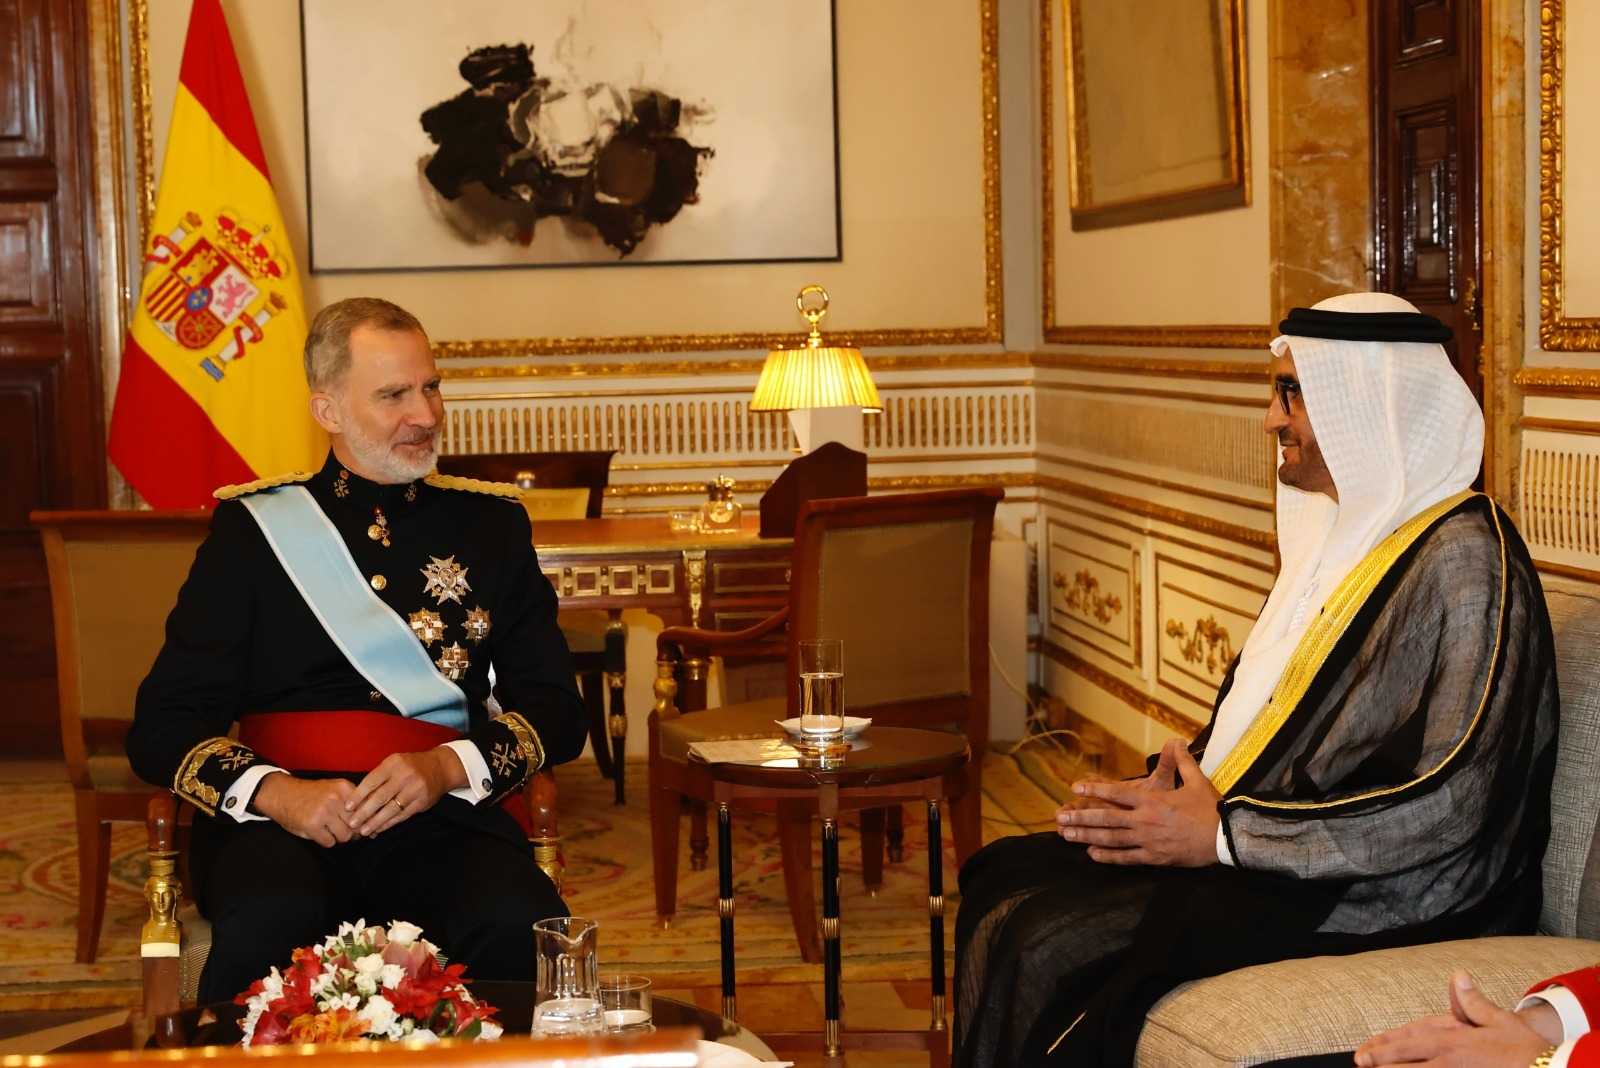 سفير الإمارات يقدم أوراق اعتماده إلى ملك إسبانيا